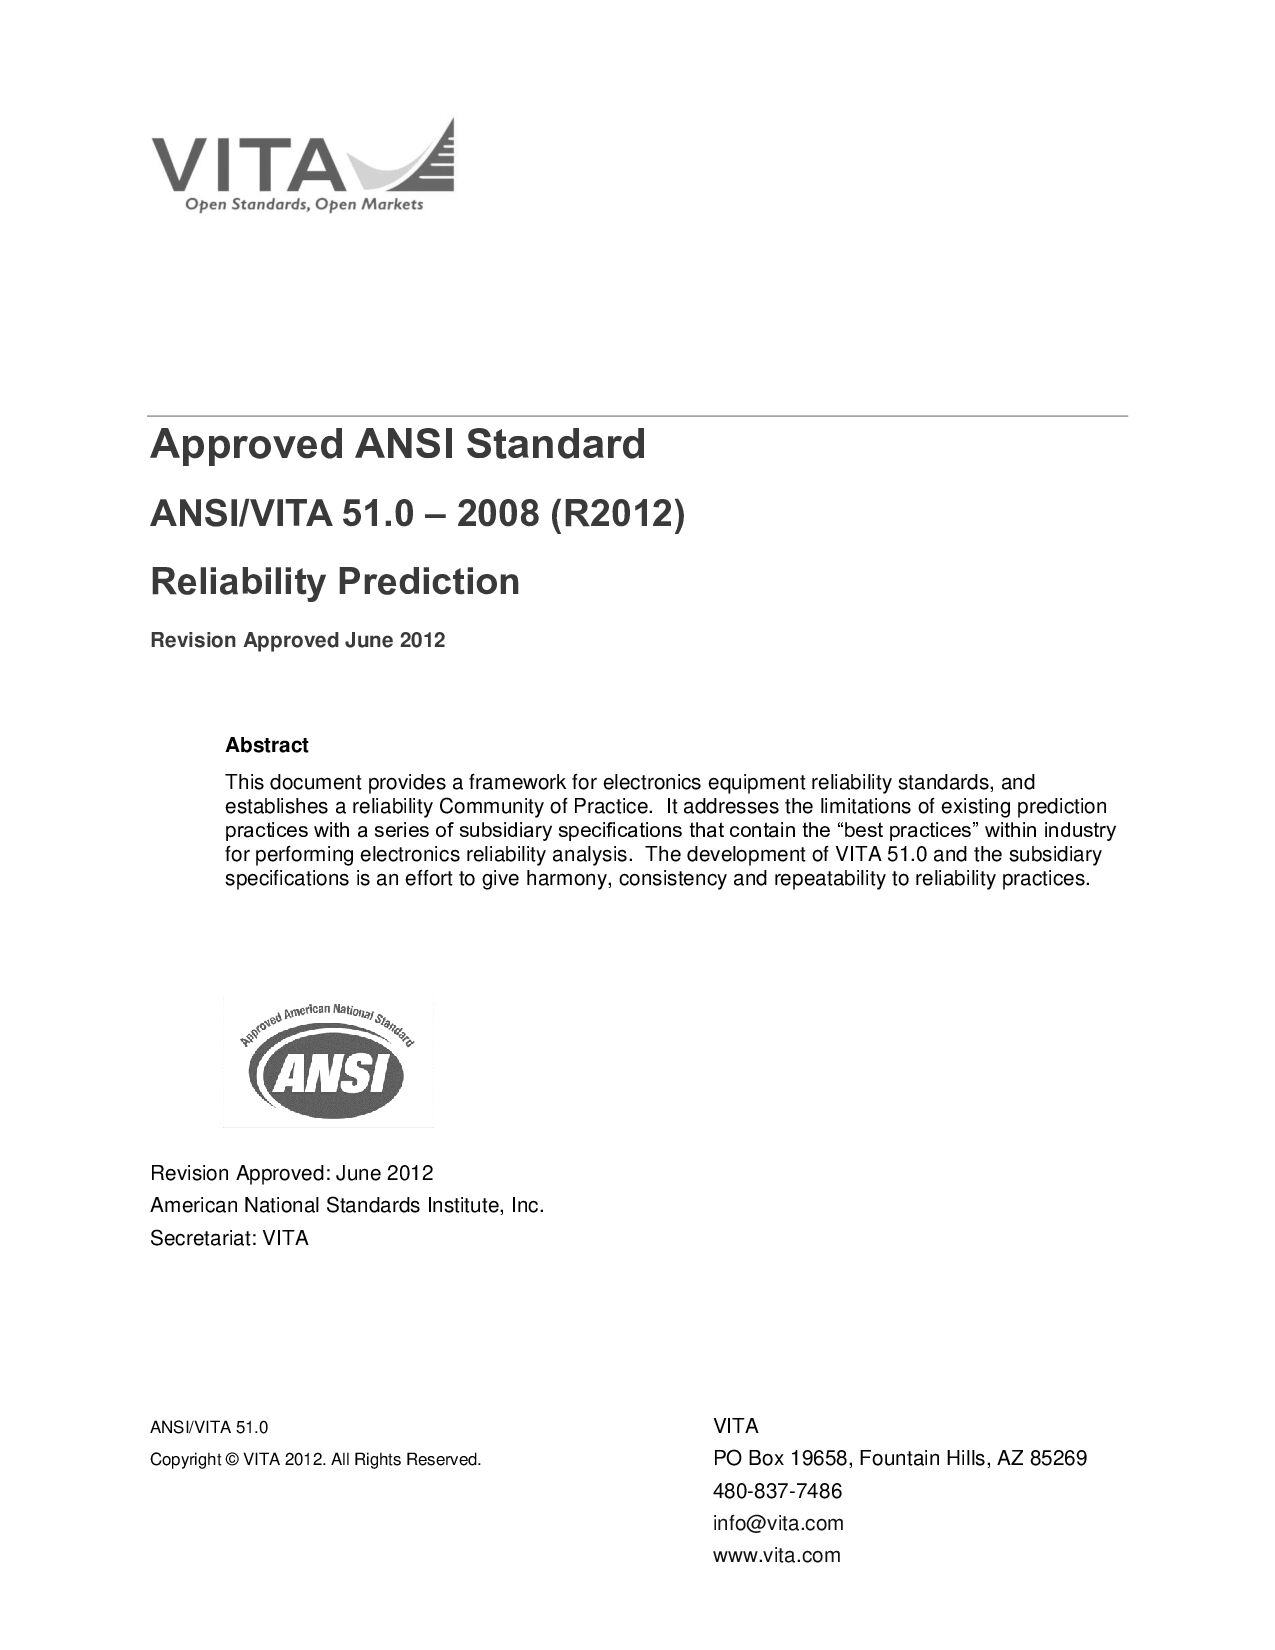 ANSI/VITA 51.0-2008(R2012)封面图